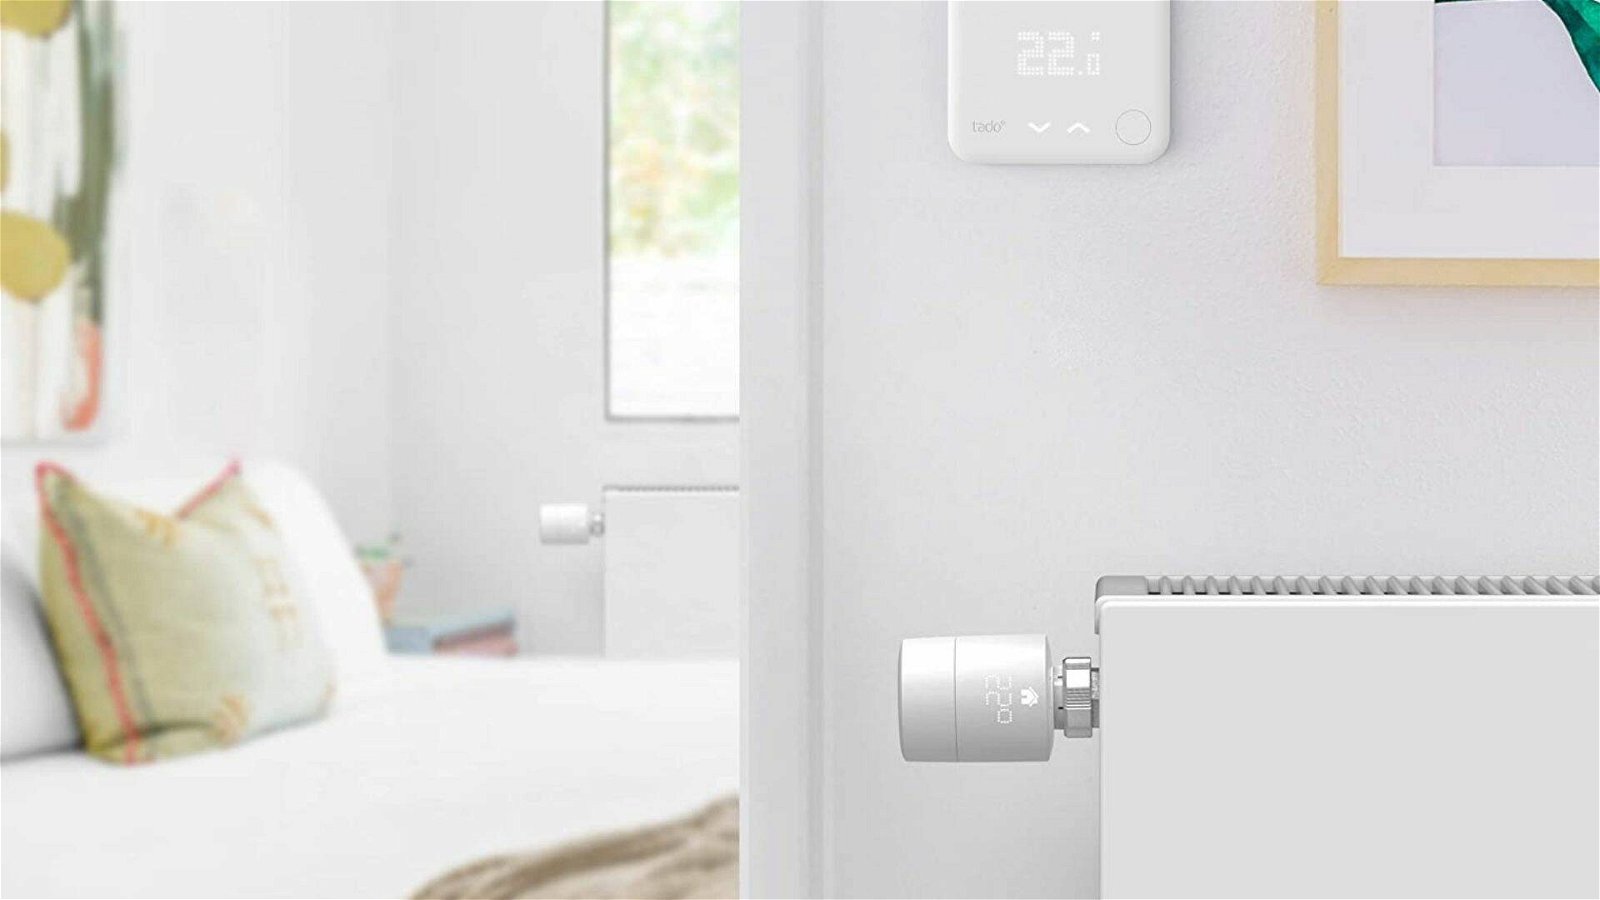 Immagine di Offerte Smart Home: tagli di prezzo imperdibili su termostati, videocamere e non solo!